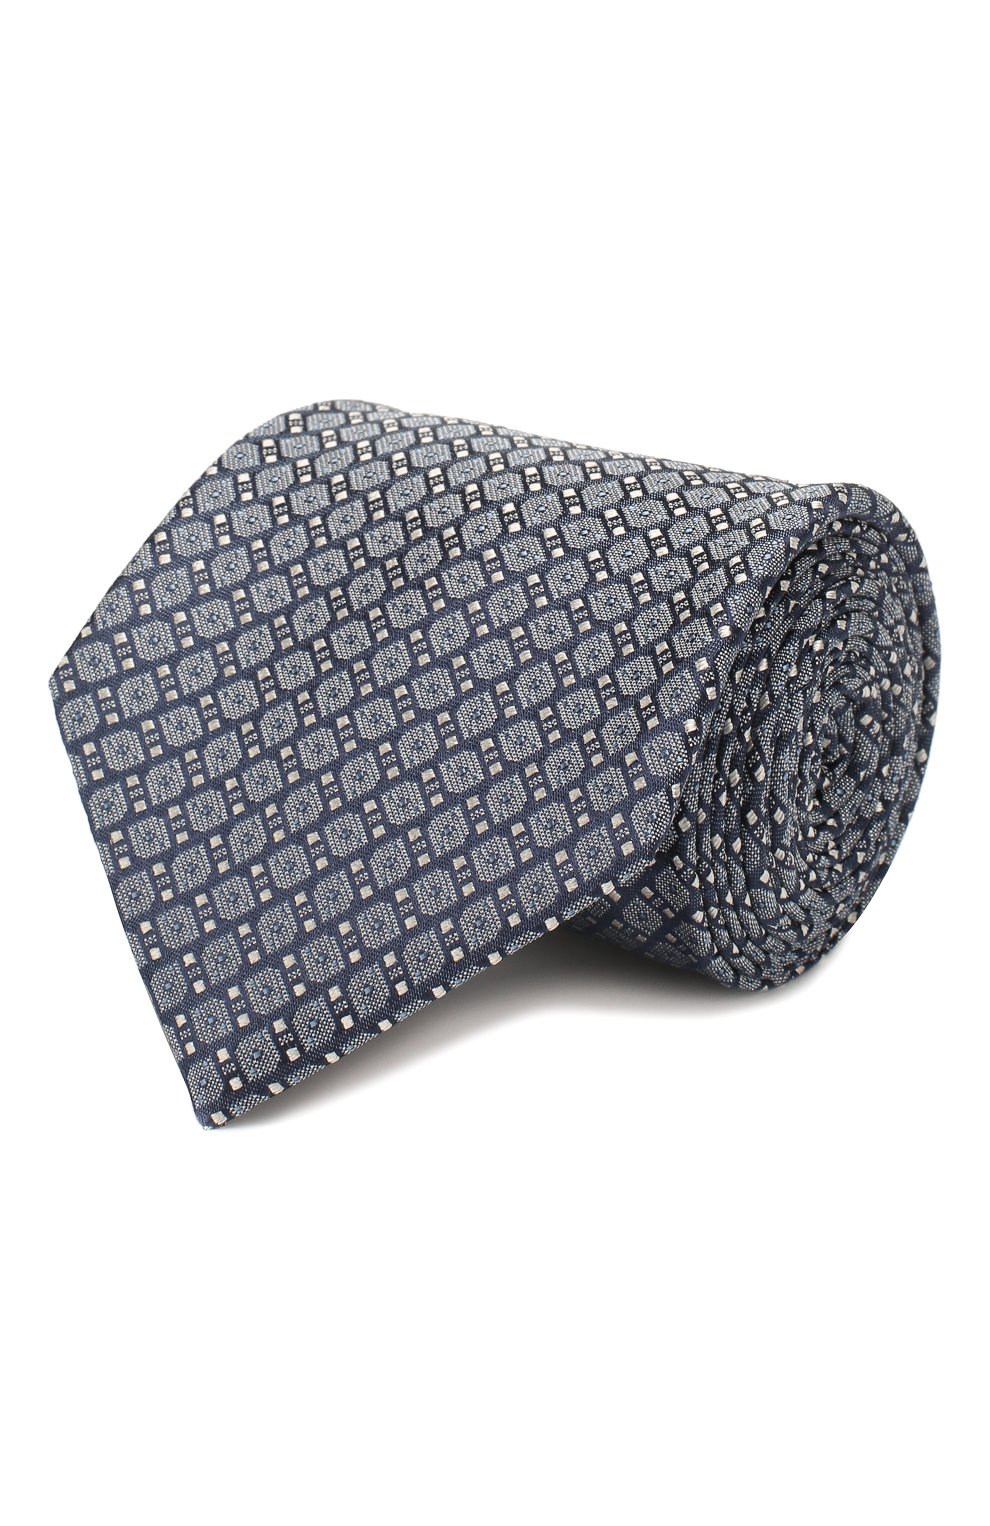 С принтом Brioni, Шелковый галстук Brioni, Италия, Синий, Шелк: 100%;, 10796523  - купить